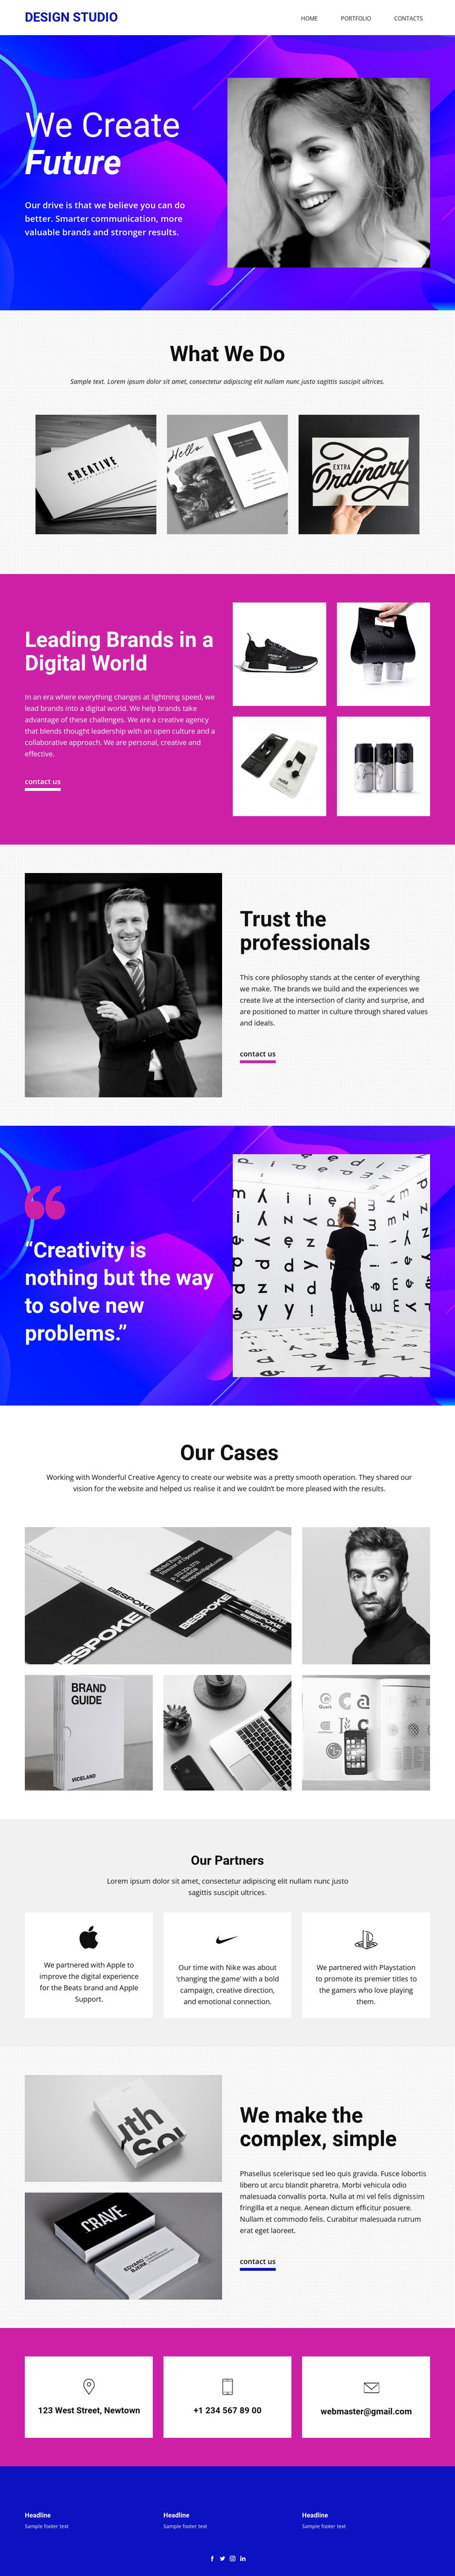 We develop the brand’s core Web Design